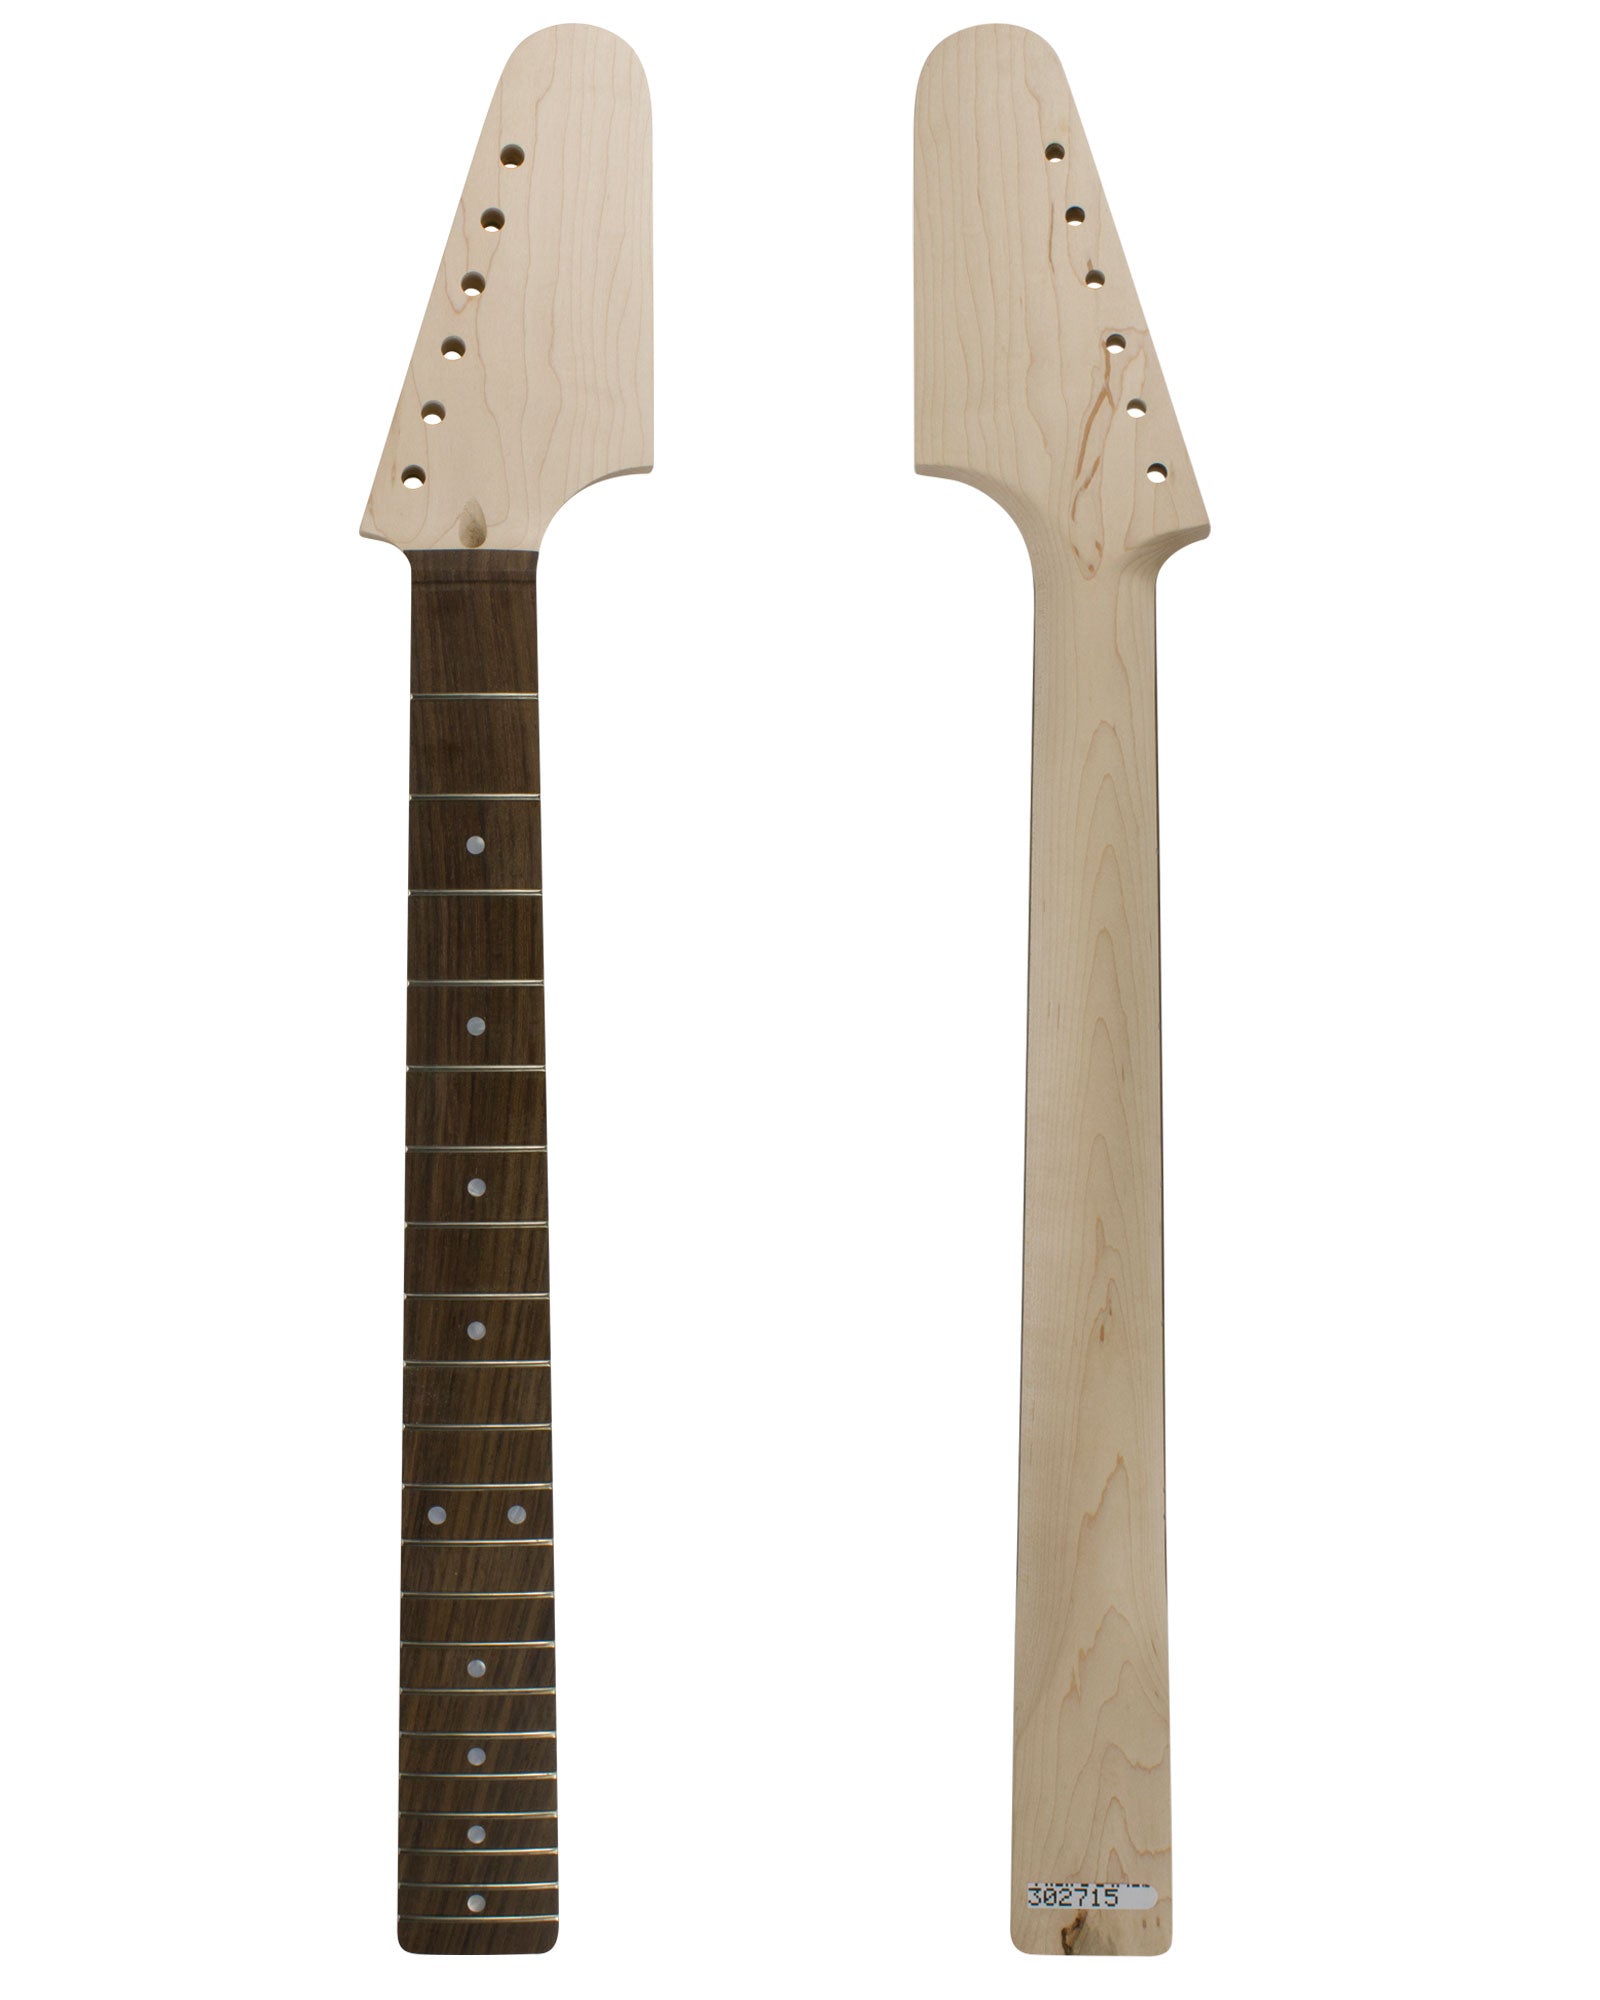 TC Guitar Neck 302715-Guitar Neck - In Stock-Guitarbuild